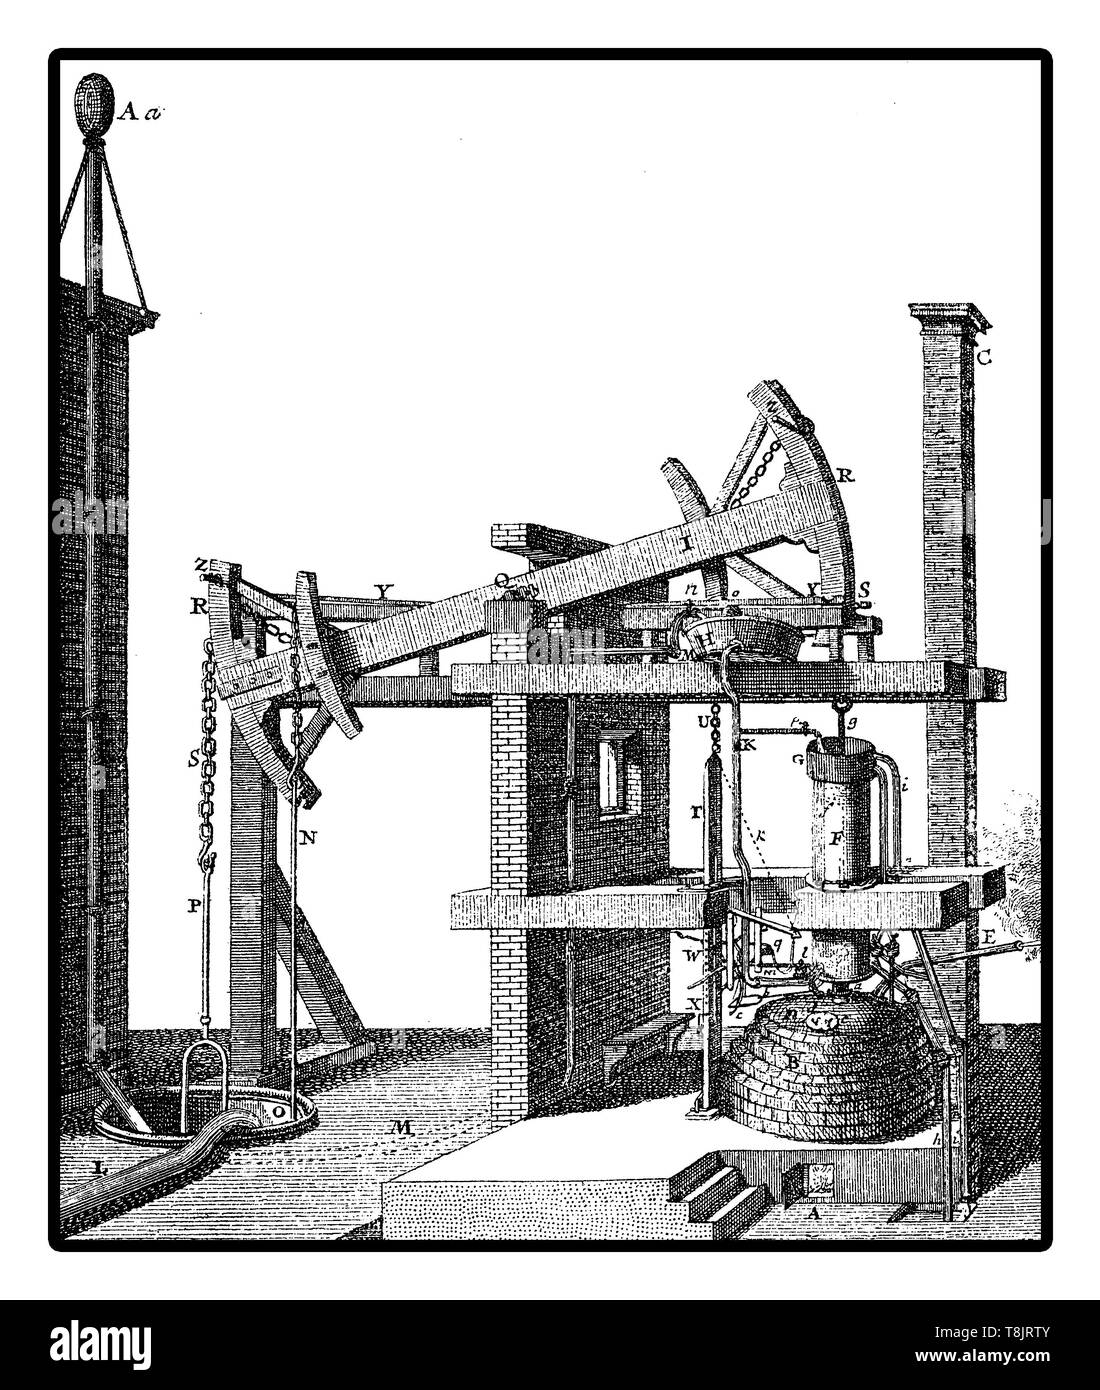 Dampfmaschine jahr 1727. Der erste kommerziell erfolgreiche Motor wurde im Jahr 1712 entwickelt. Stockfoto